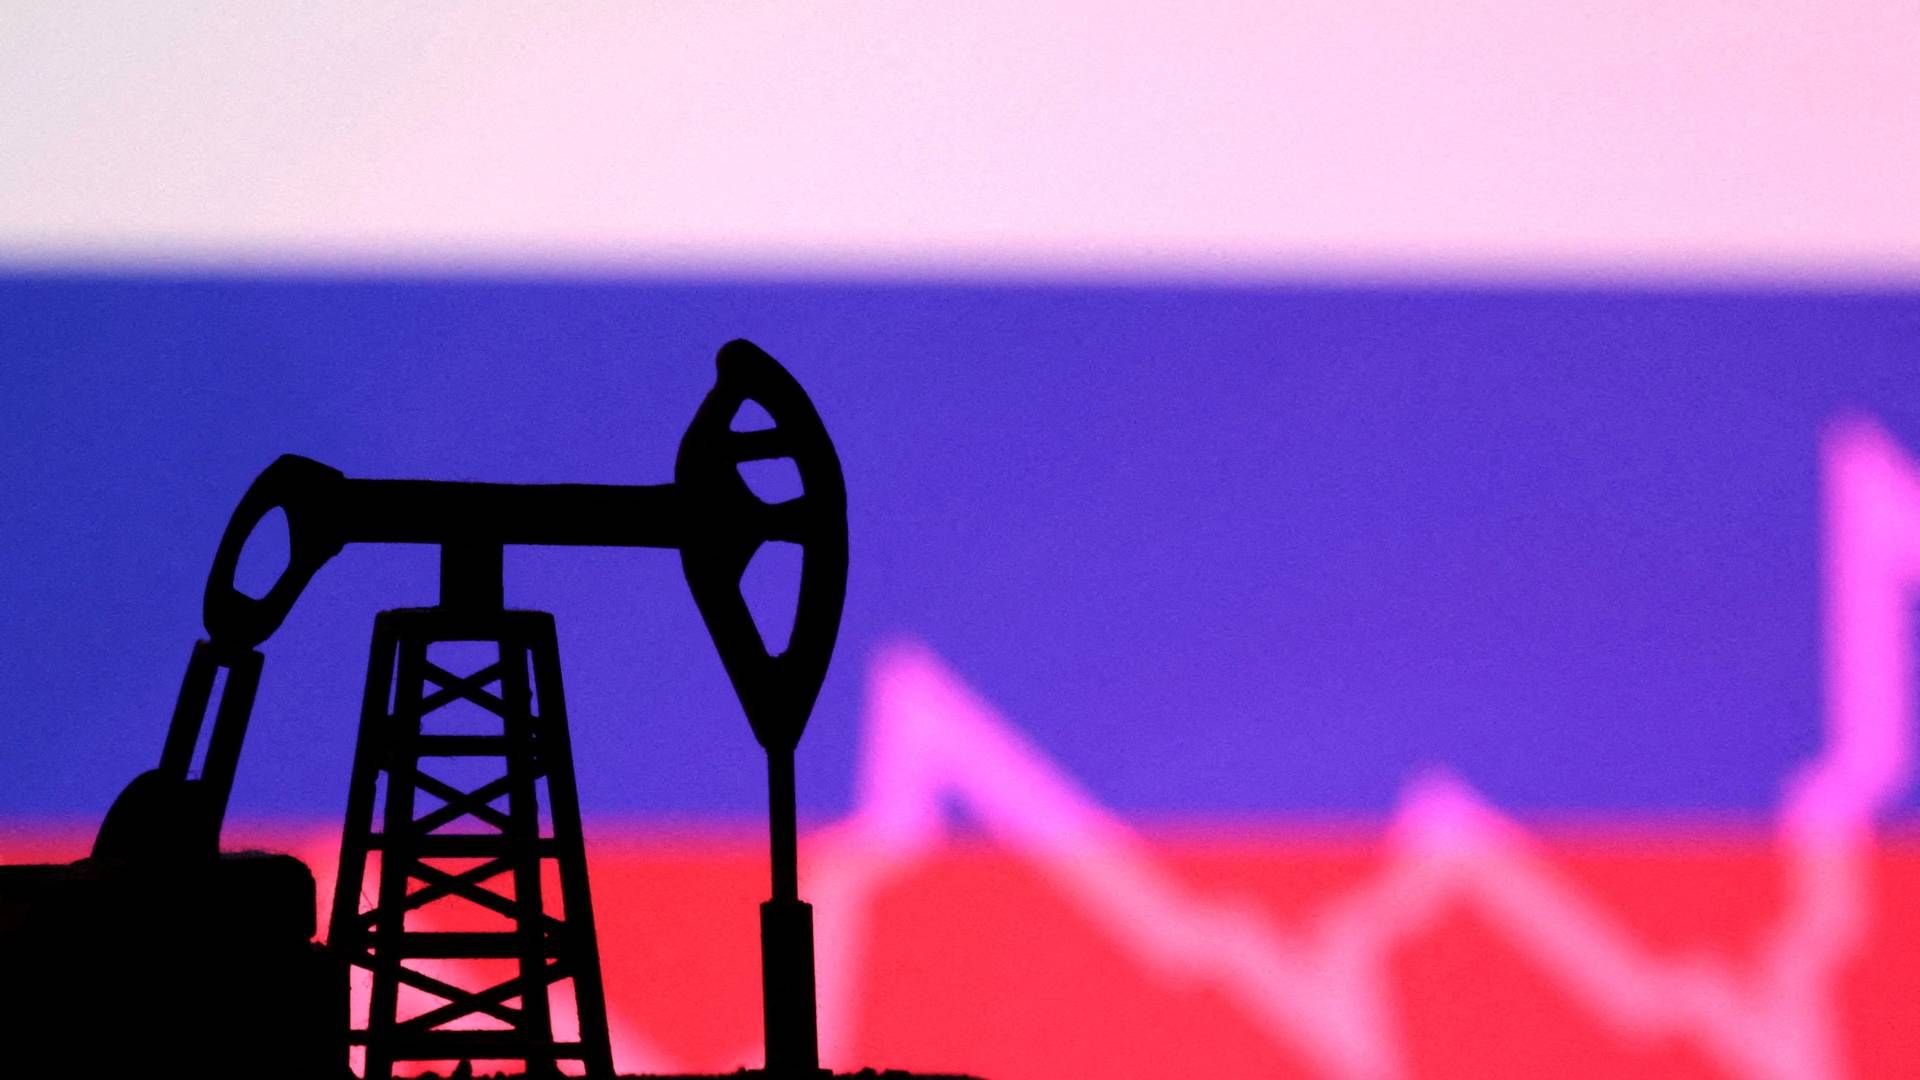 Prisen på råolie er faldet med omkring en fjerdedel siden slutningen af september efter en plan fra de olieproducerende lande i OPEC+ om at skære endnu mere i olieproduktionen. | Foto: Dado Ruvic